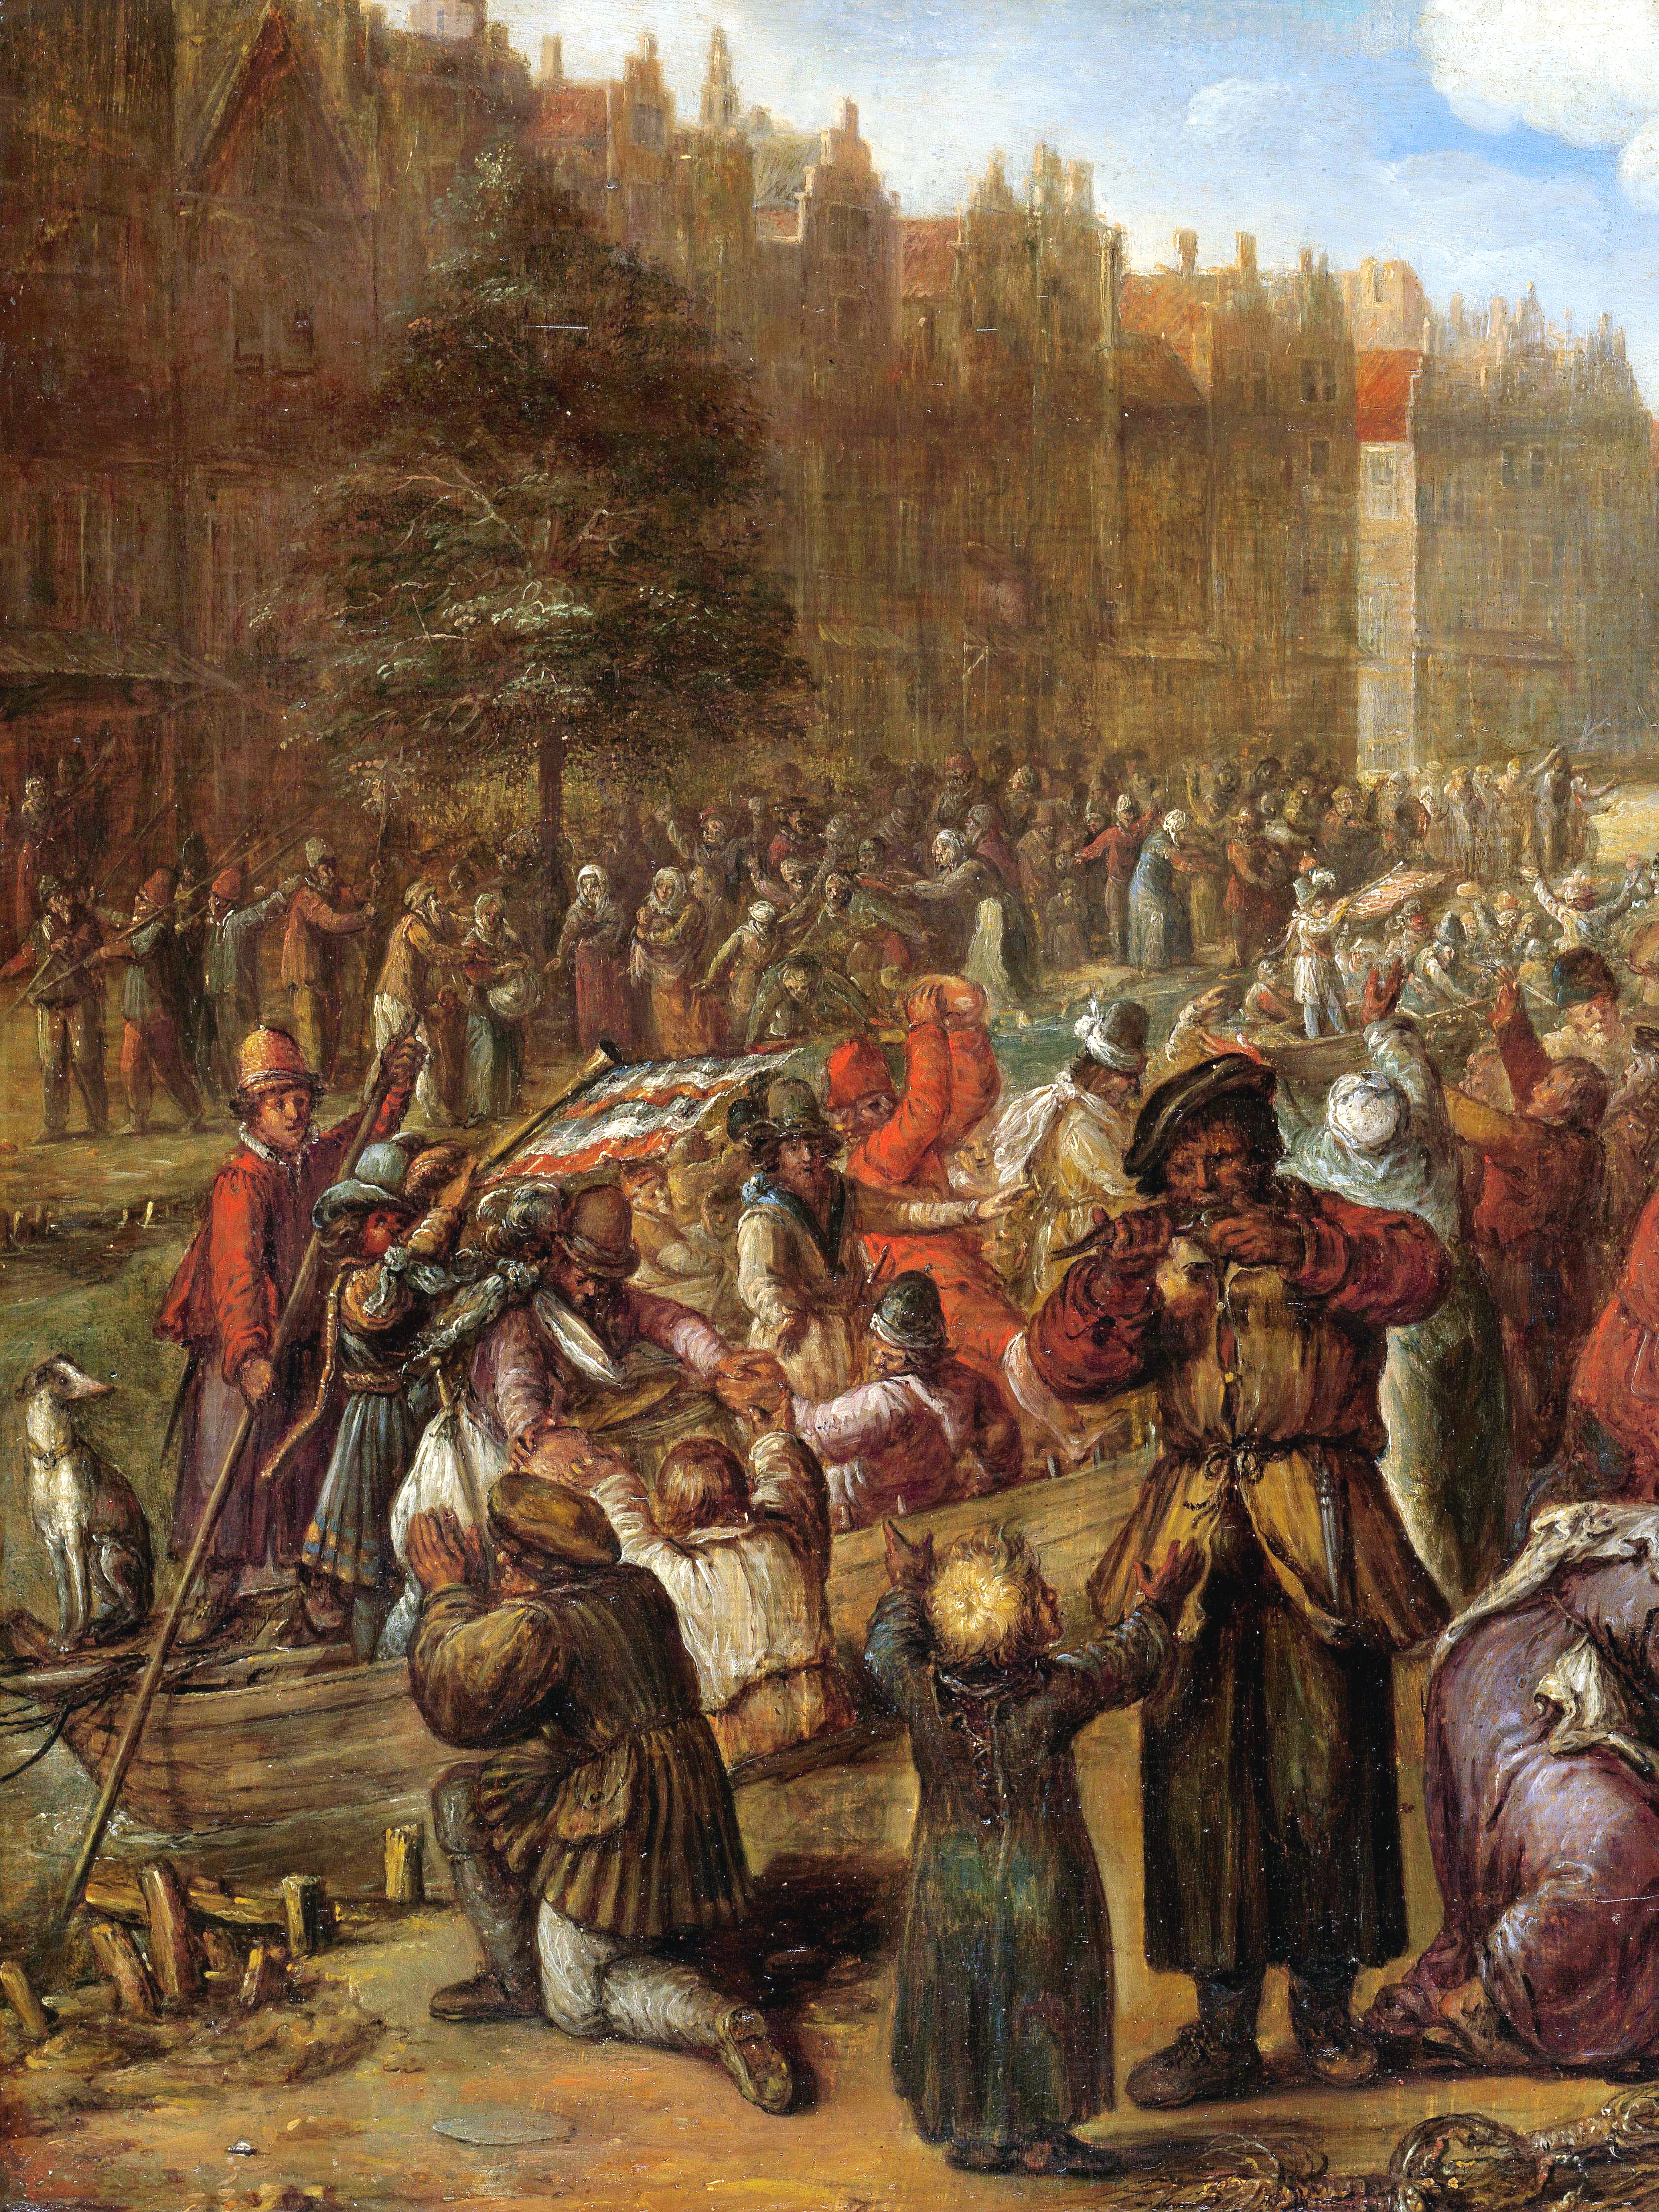 Schilderij van het beleg van de stad Leiden. Op de achtergrond zijn schutters te zien. 